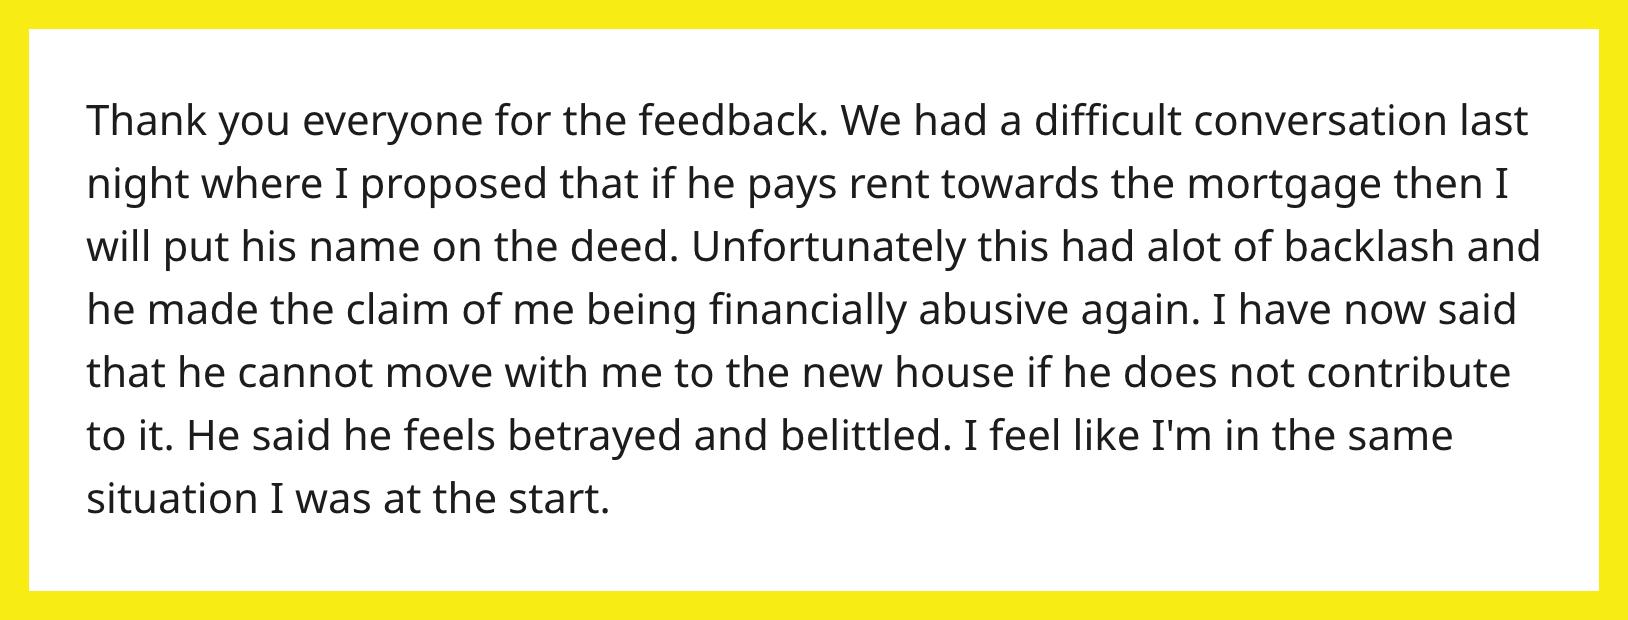 Redditor på AITA fortalte sin arbejdsløse partner, at han ikke kan flytte ind, medmindre han betaler husleje.